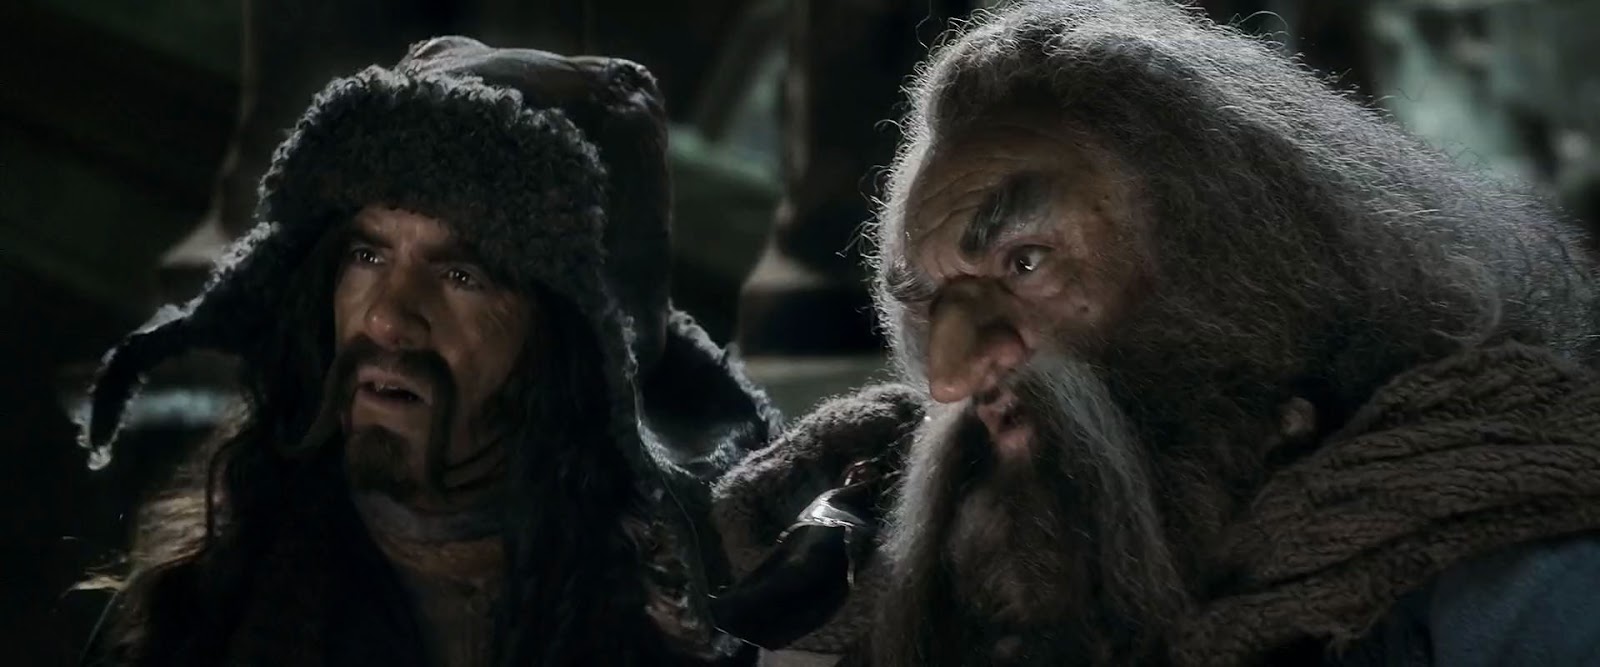 El Hobbit 3 la batalla de los cinco ejércitos (2014) HD 1080p Latino 